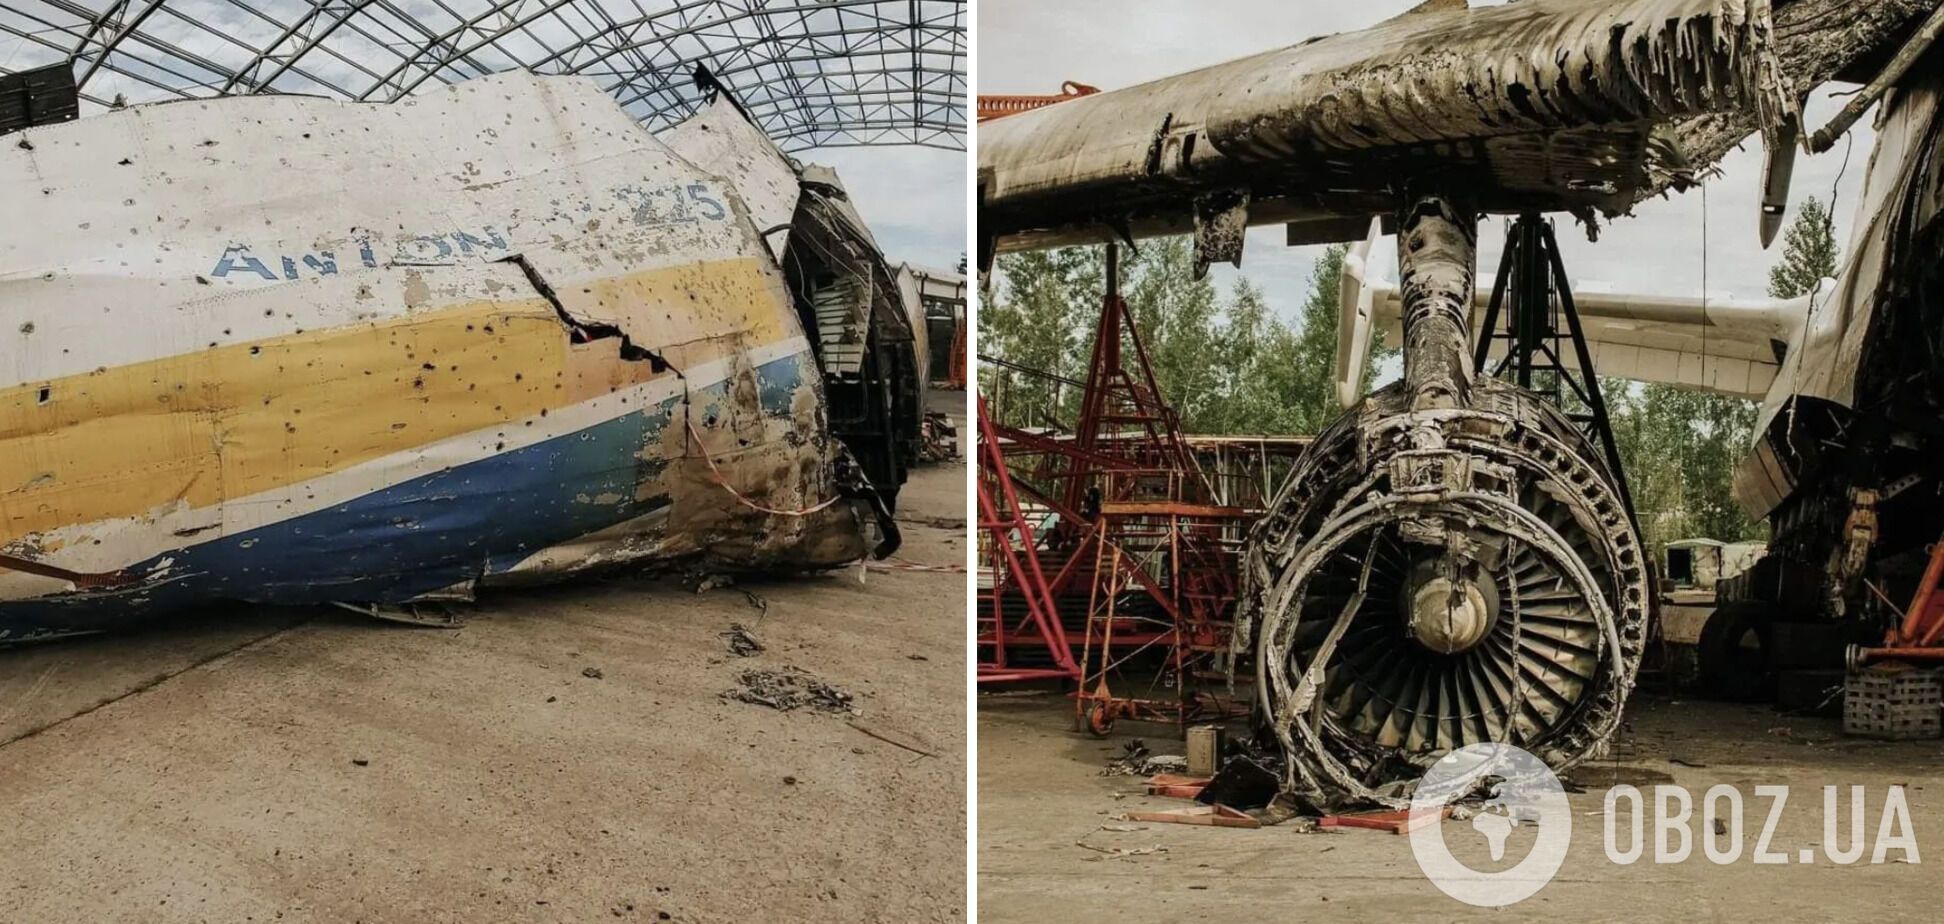 У СБУ розкрили деталі розслідування щодо знищення АН-225 "Мрія": кого звинувачують і що відомо 